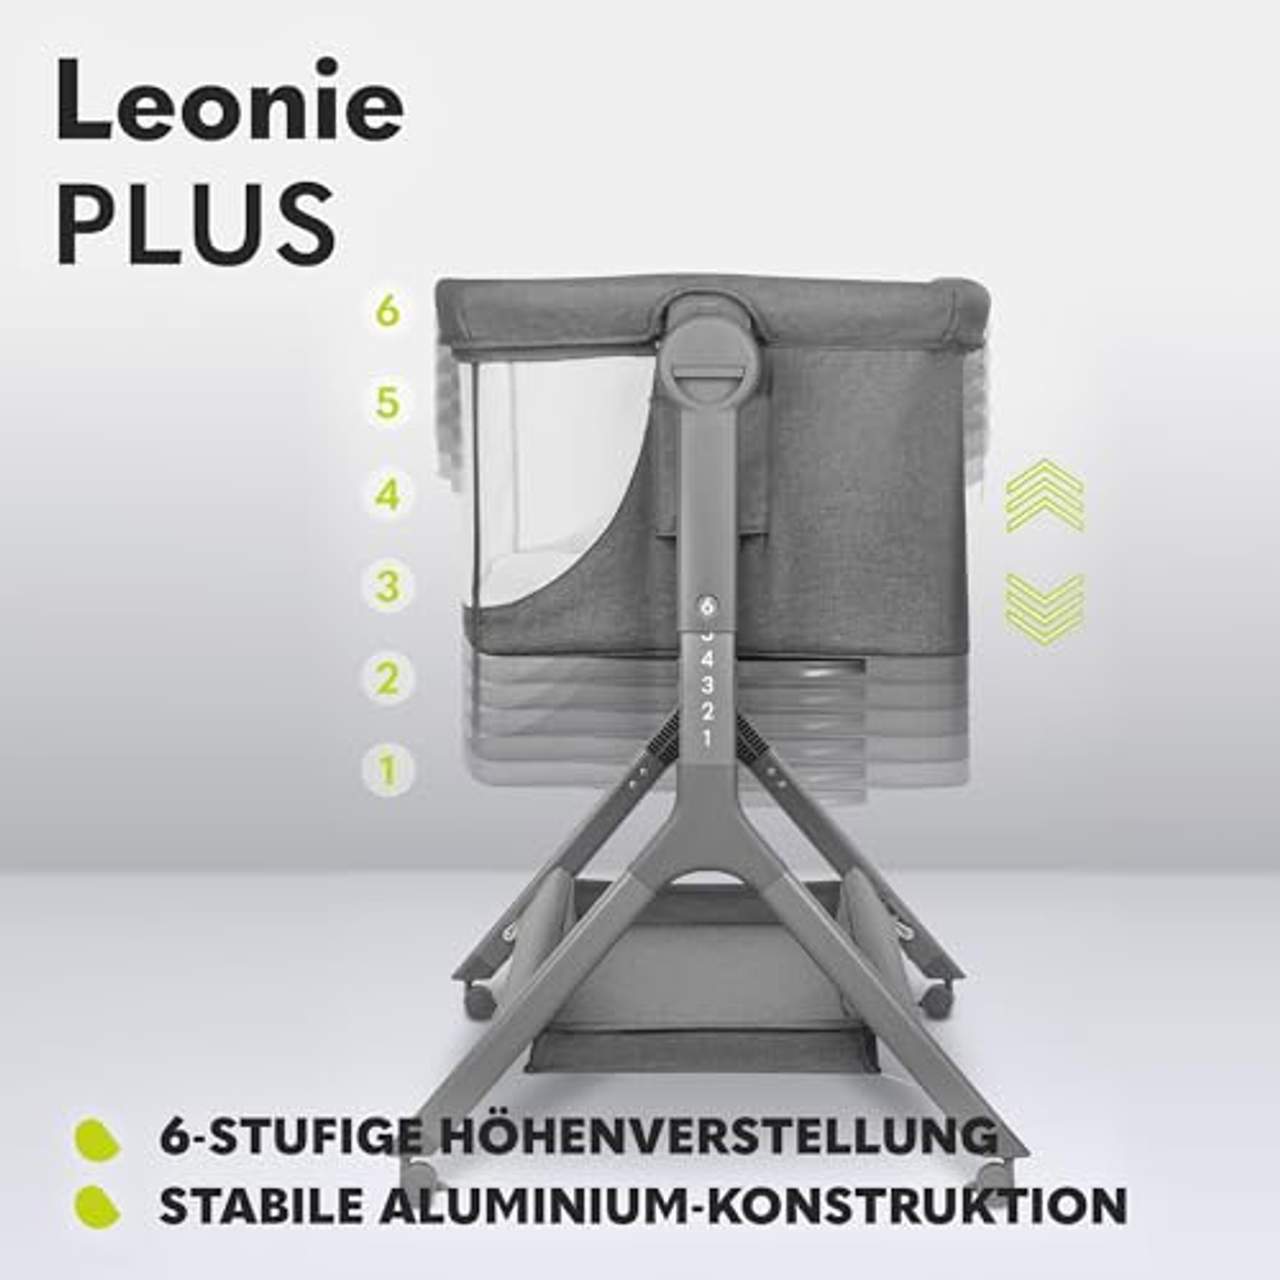 Lionelo Leonie Plus 3 in 1 Kinderbett bis 9kg